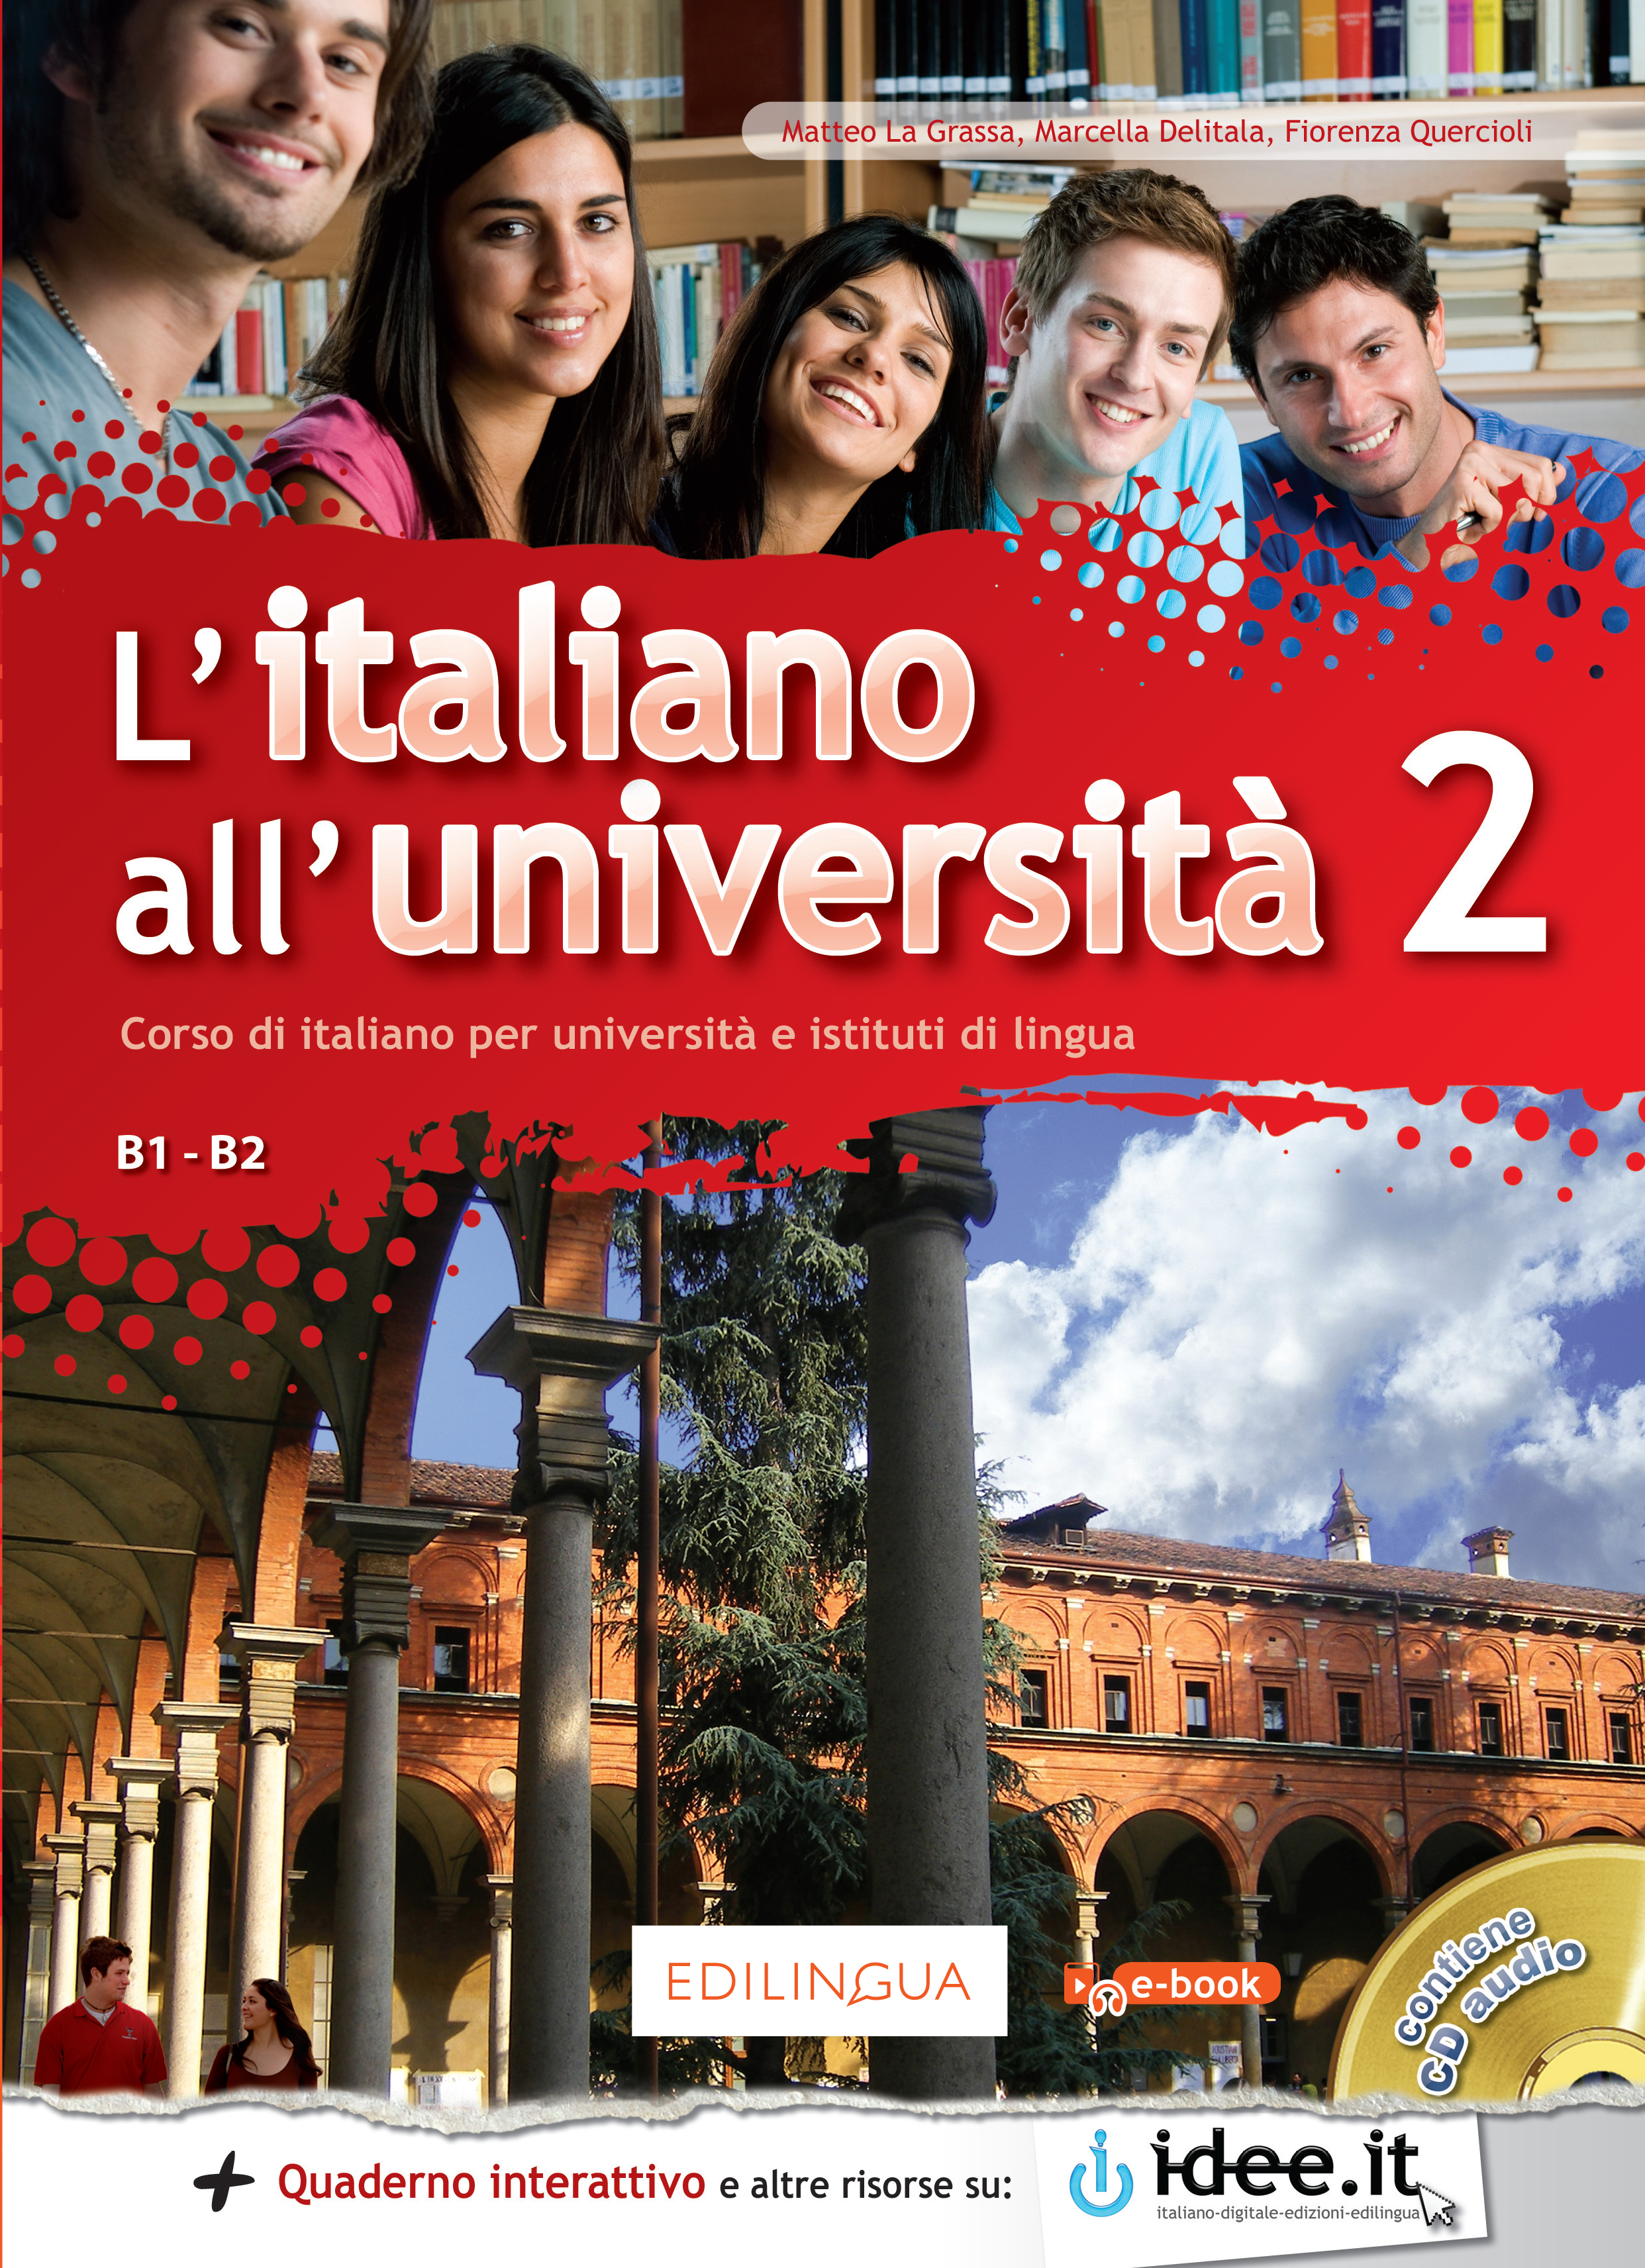 L'italiano all'università 2 - Libro dello studente